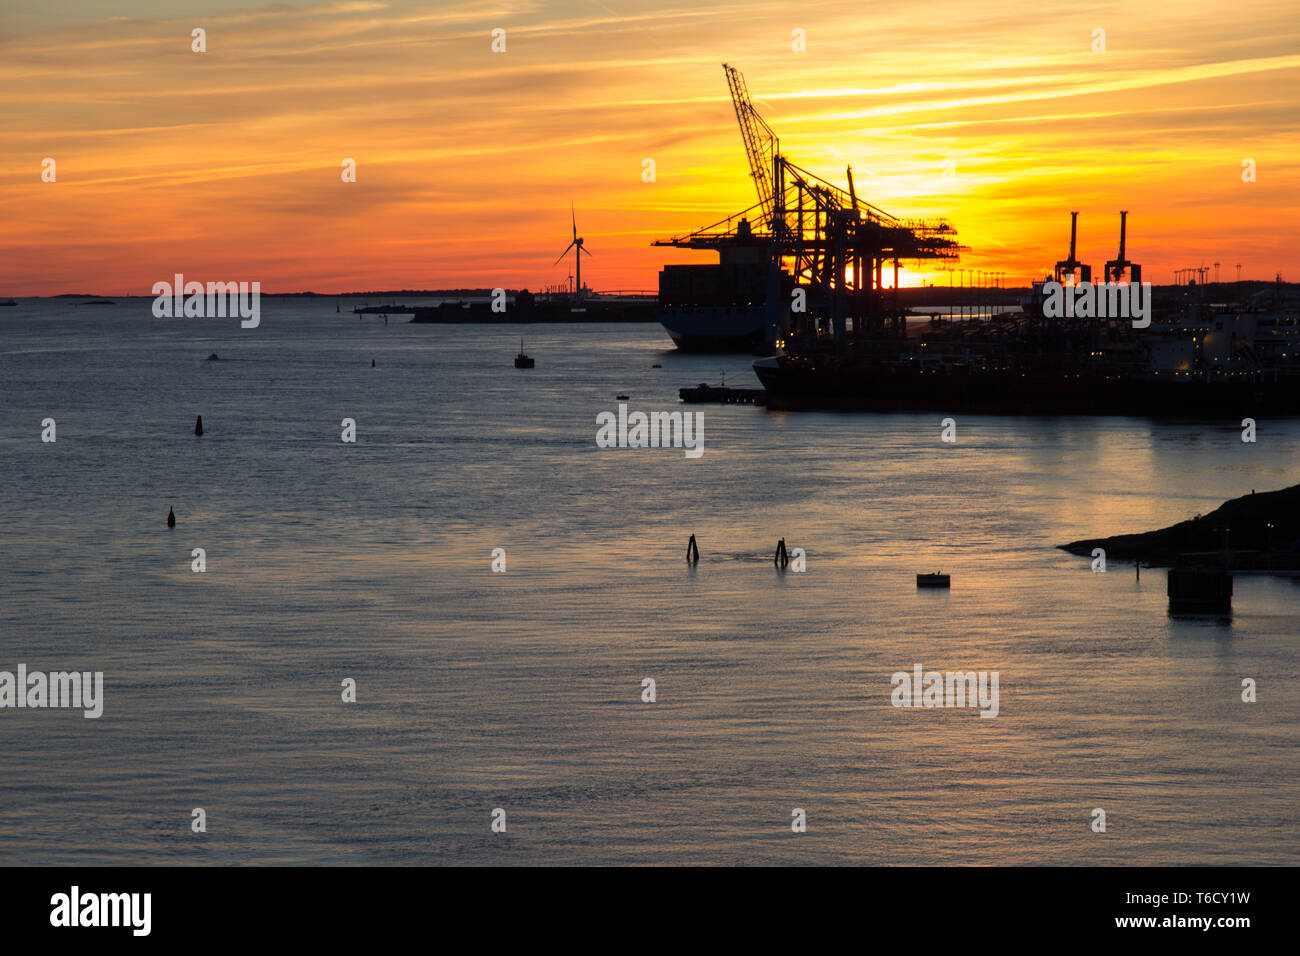 Krähne Kran bei Sonnenuntergang im Hafen von Göteborg Schweden tramonto nel porto di Göteborg con gru a carroponte Foto Stock